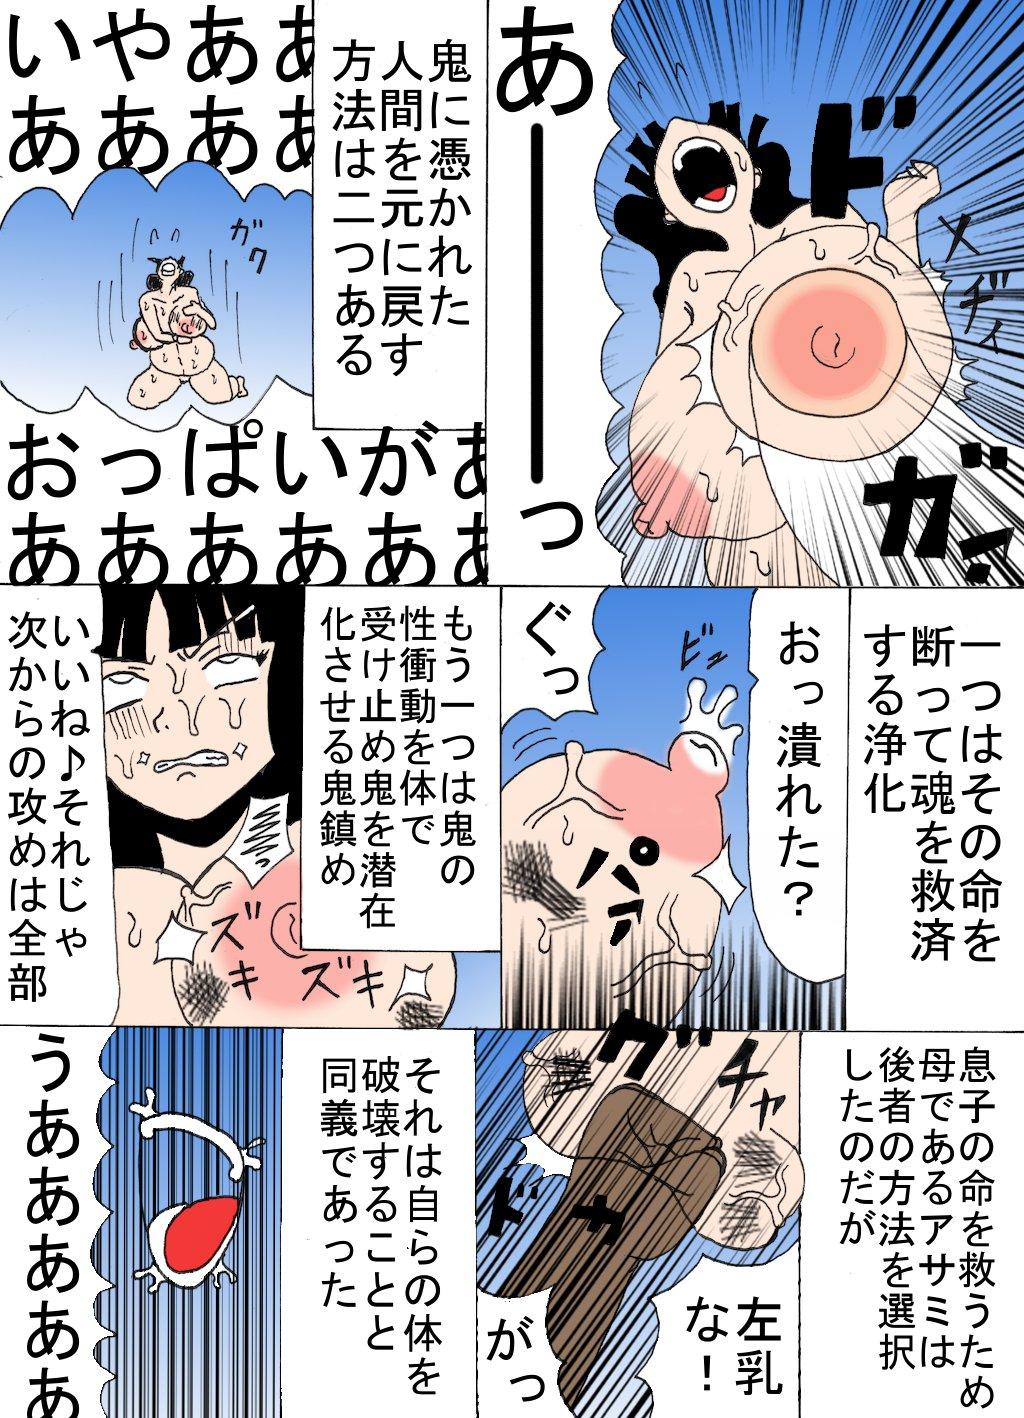 Pene Harami Haha Asami - Original Rubbing - Page 3